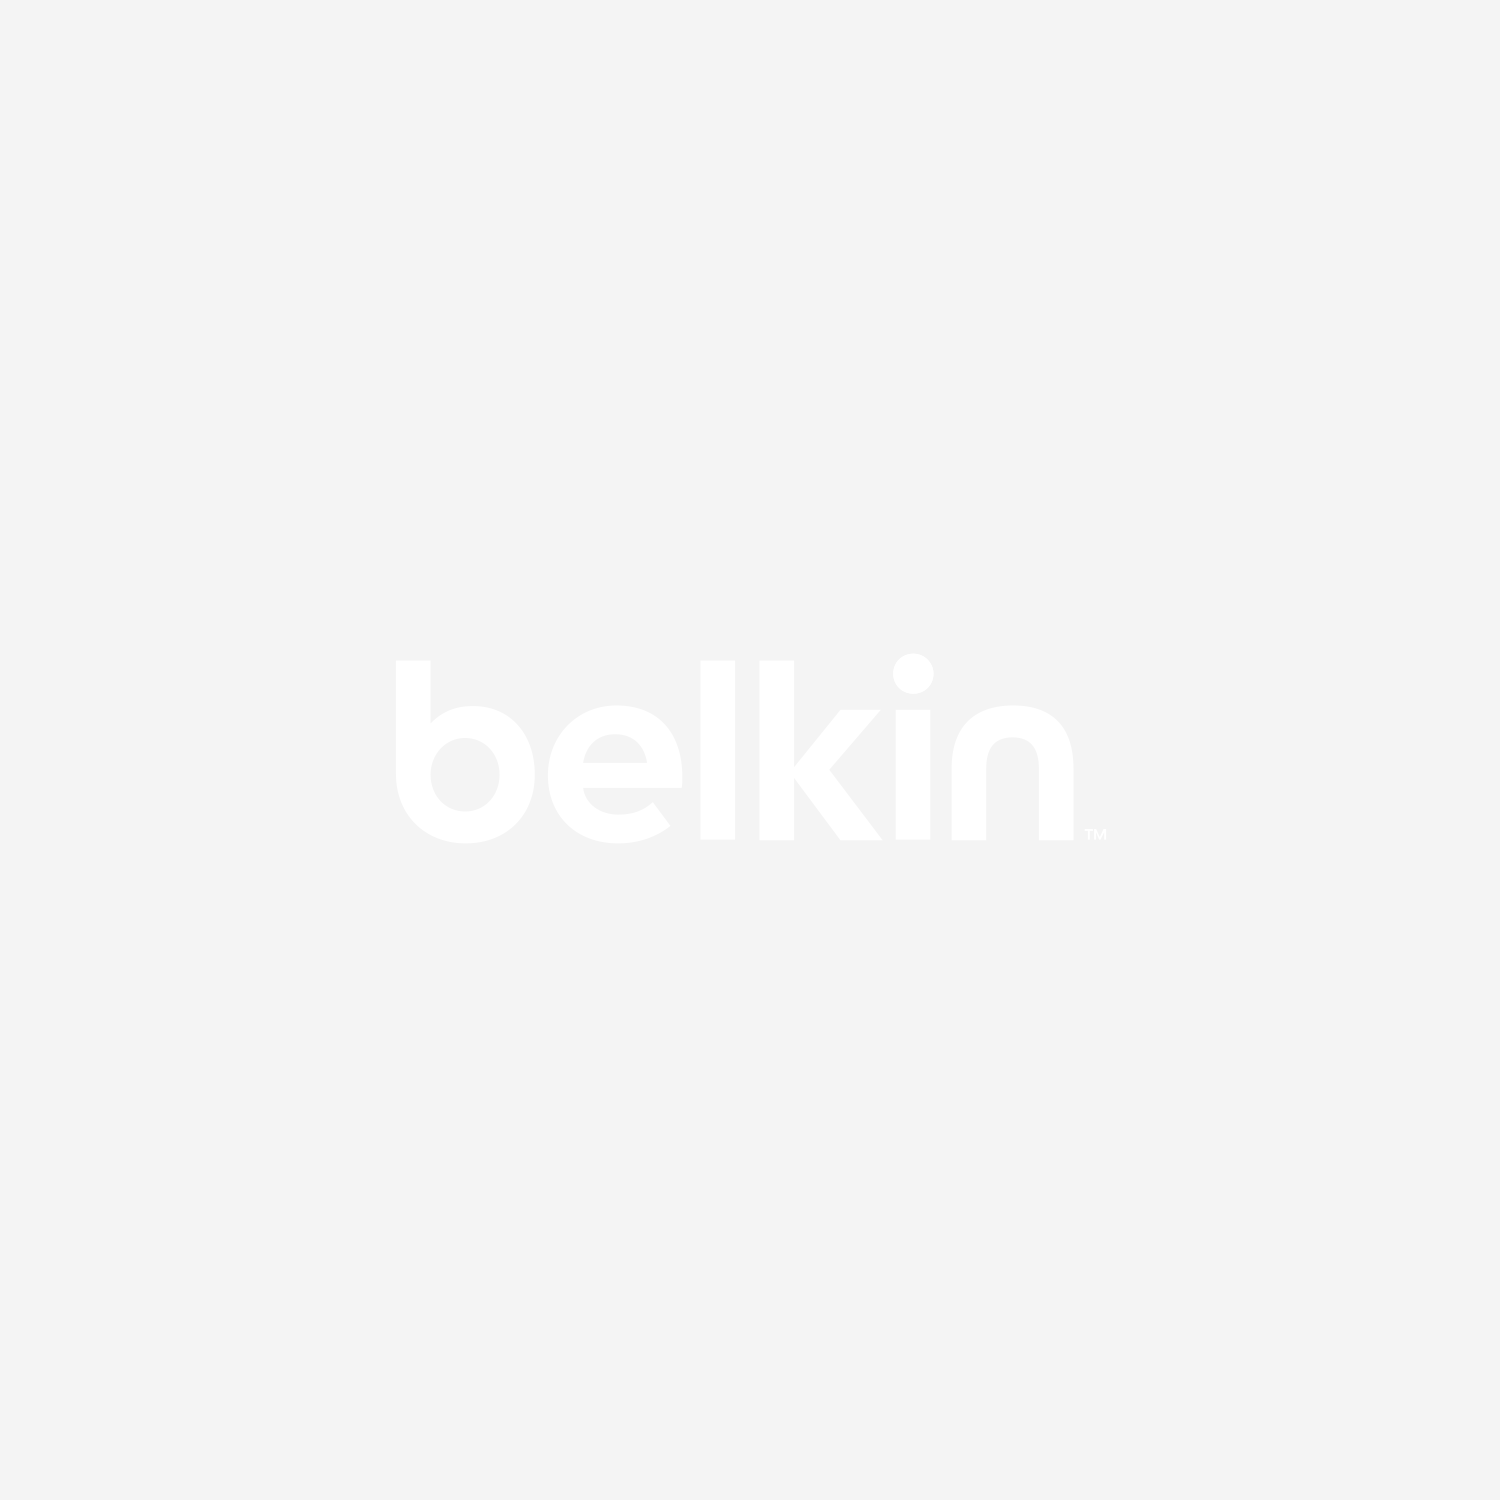 Sitio oficial de Soporte de Belkin - Conozca la base del cargador Belkin  Valet™ para Apple Watch® + iPhone®, F8J183